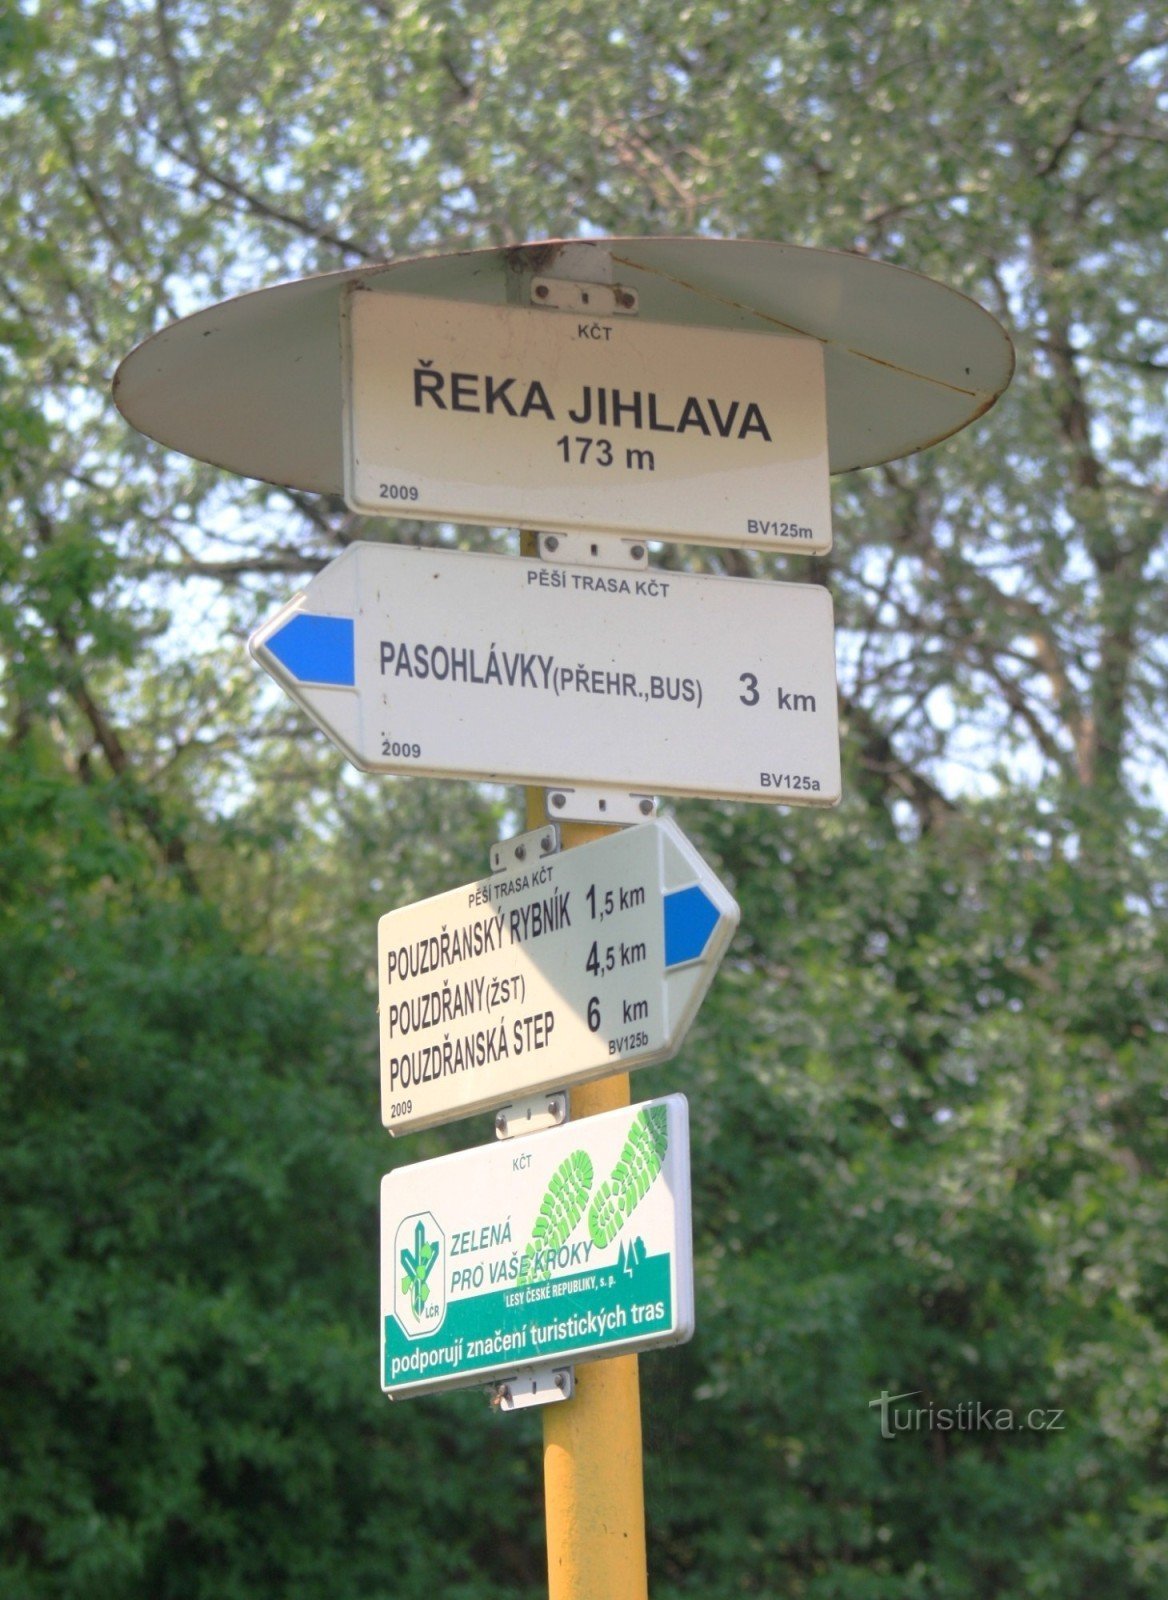 Răscruce turistică a râului Jihlava